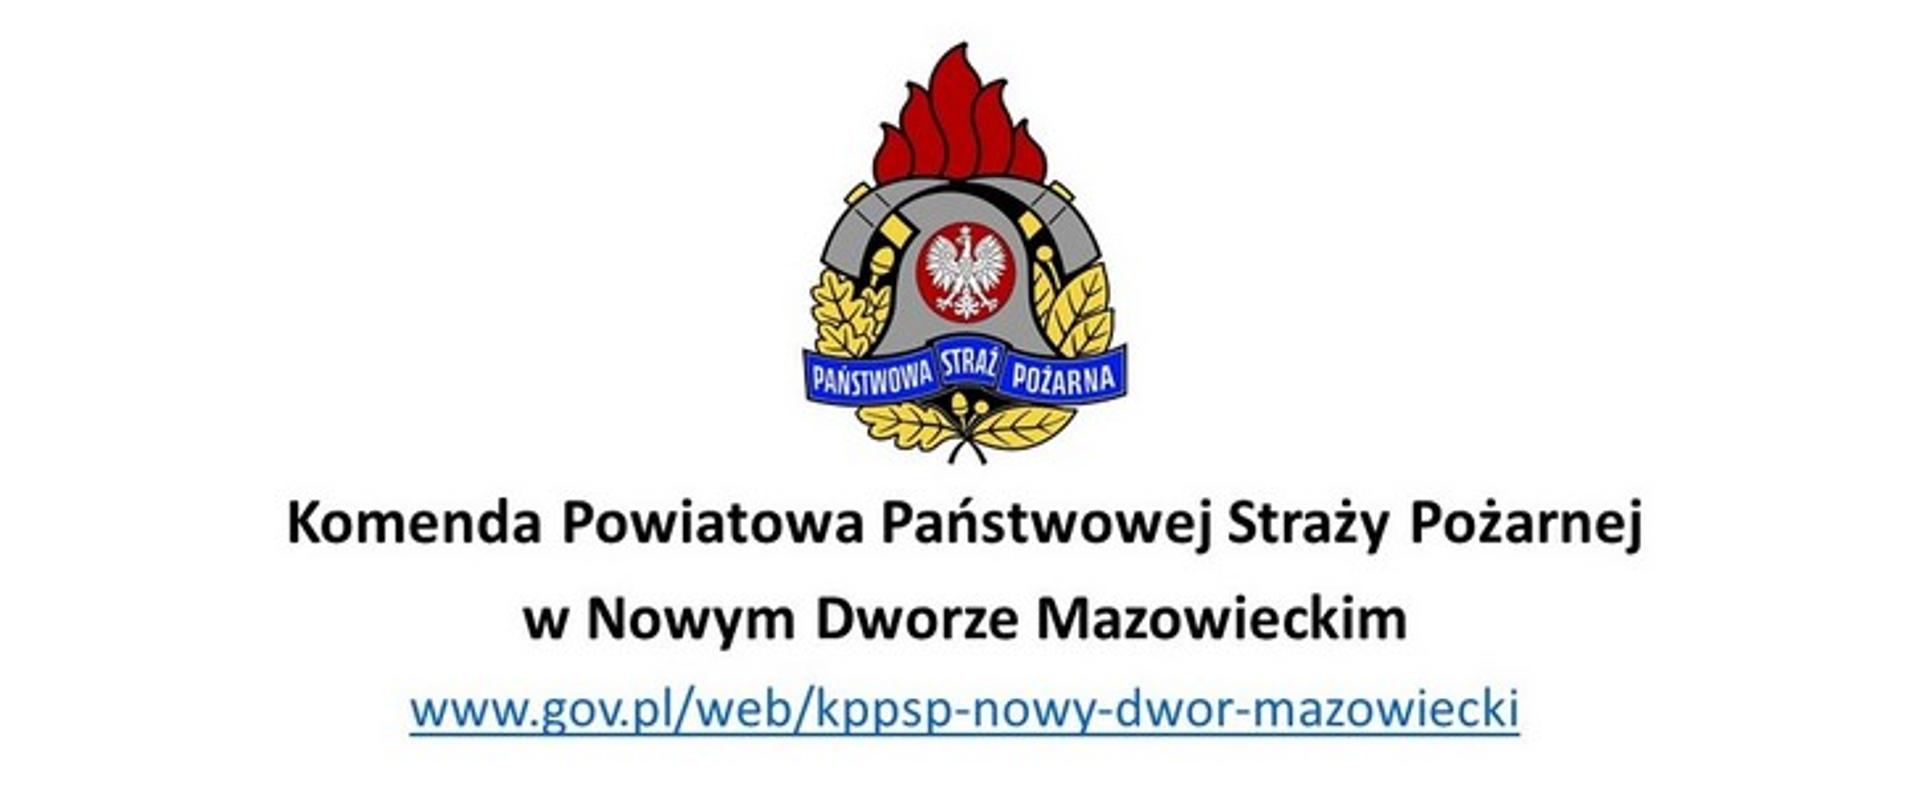 Zdjęcie przedstawia logo Państwowej Straży Pożarnej na białym tle, a poniżej napis: Komenda Powiatowa Państwowej Straży Pożarnej w Nowym Dworze Mazowieckim oraz adres strony internetowej.